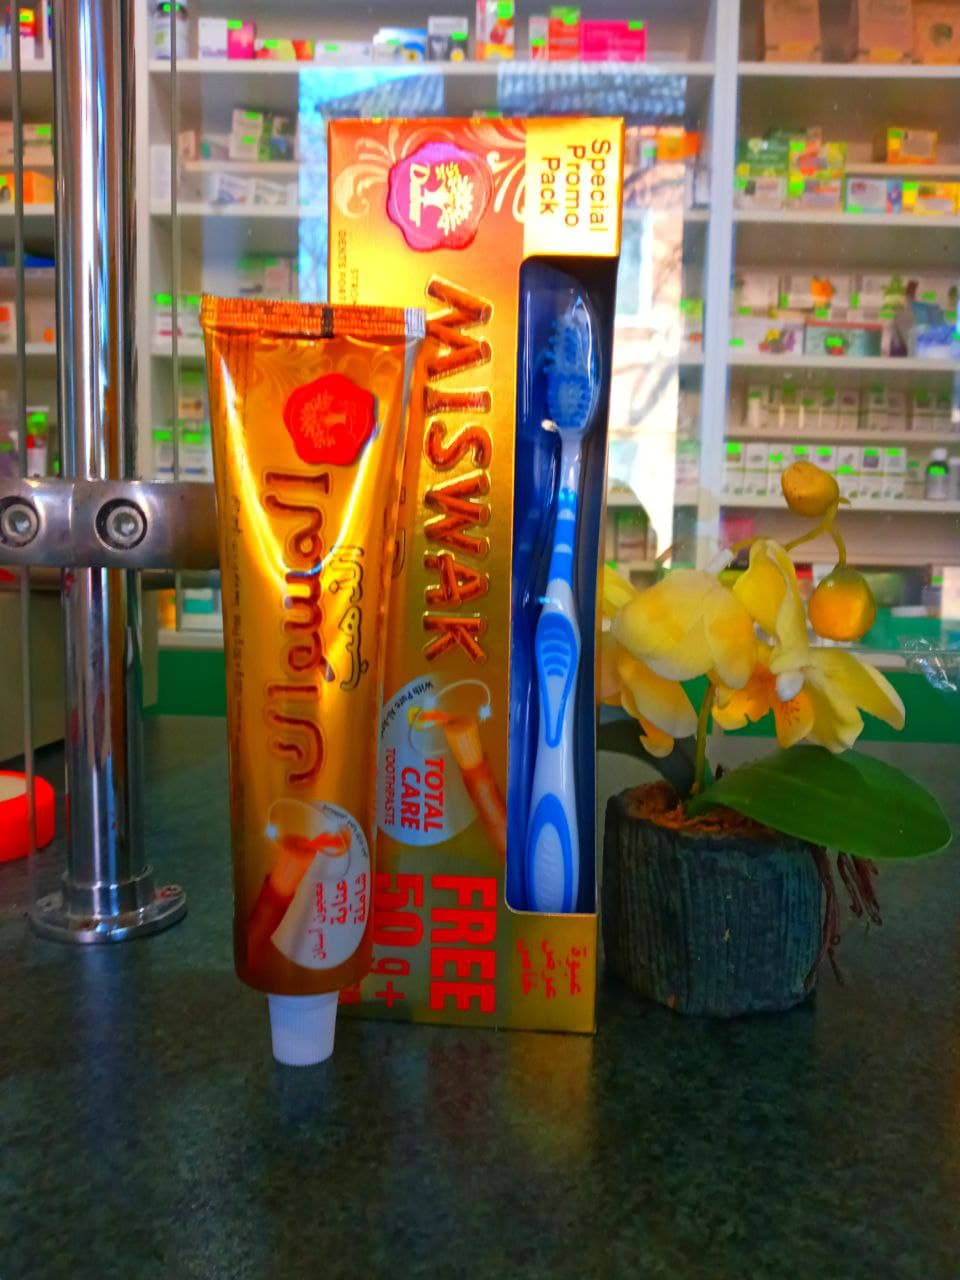 аюрведическая зубная паста Miswak Gold комплексный уход за здоровьем зубов и десен на основе экстракта дерева Арак